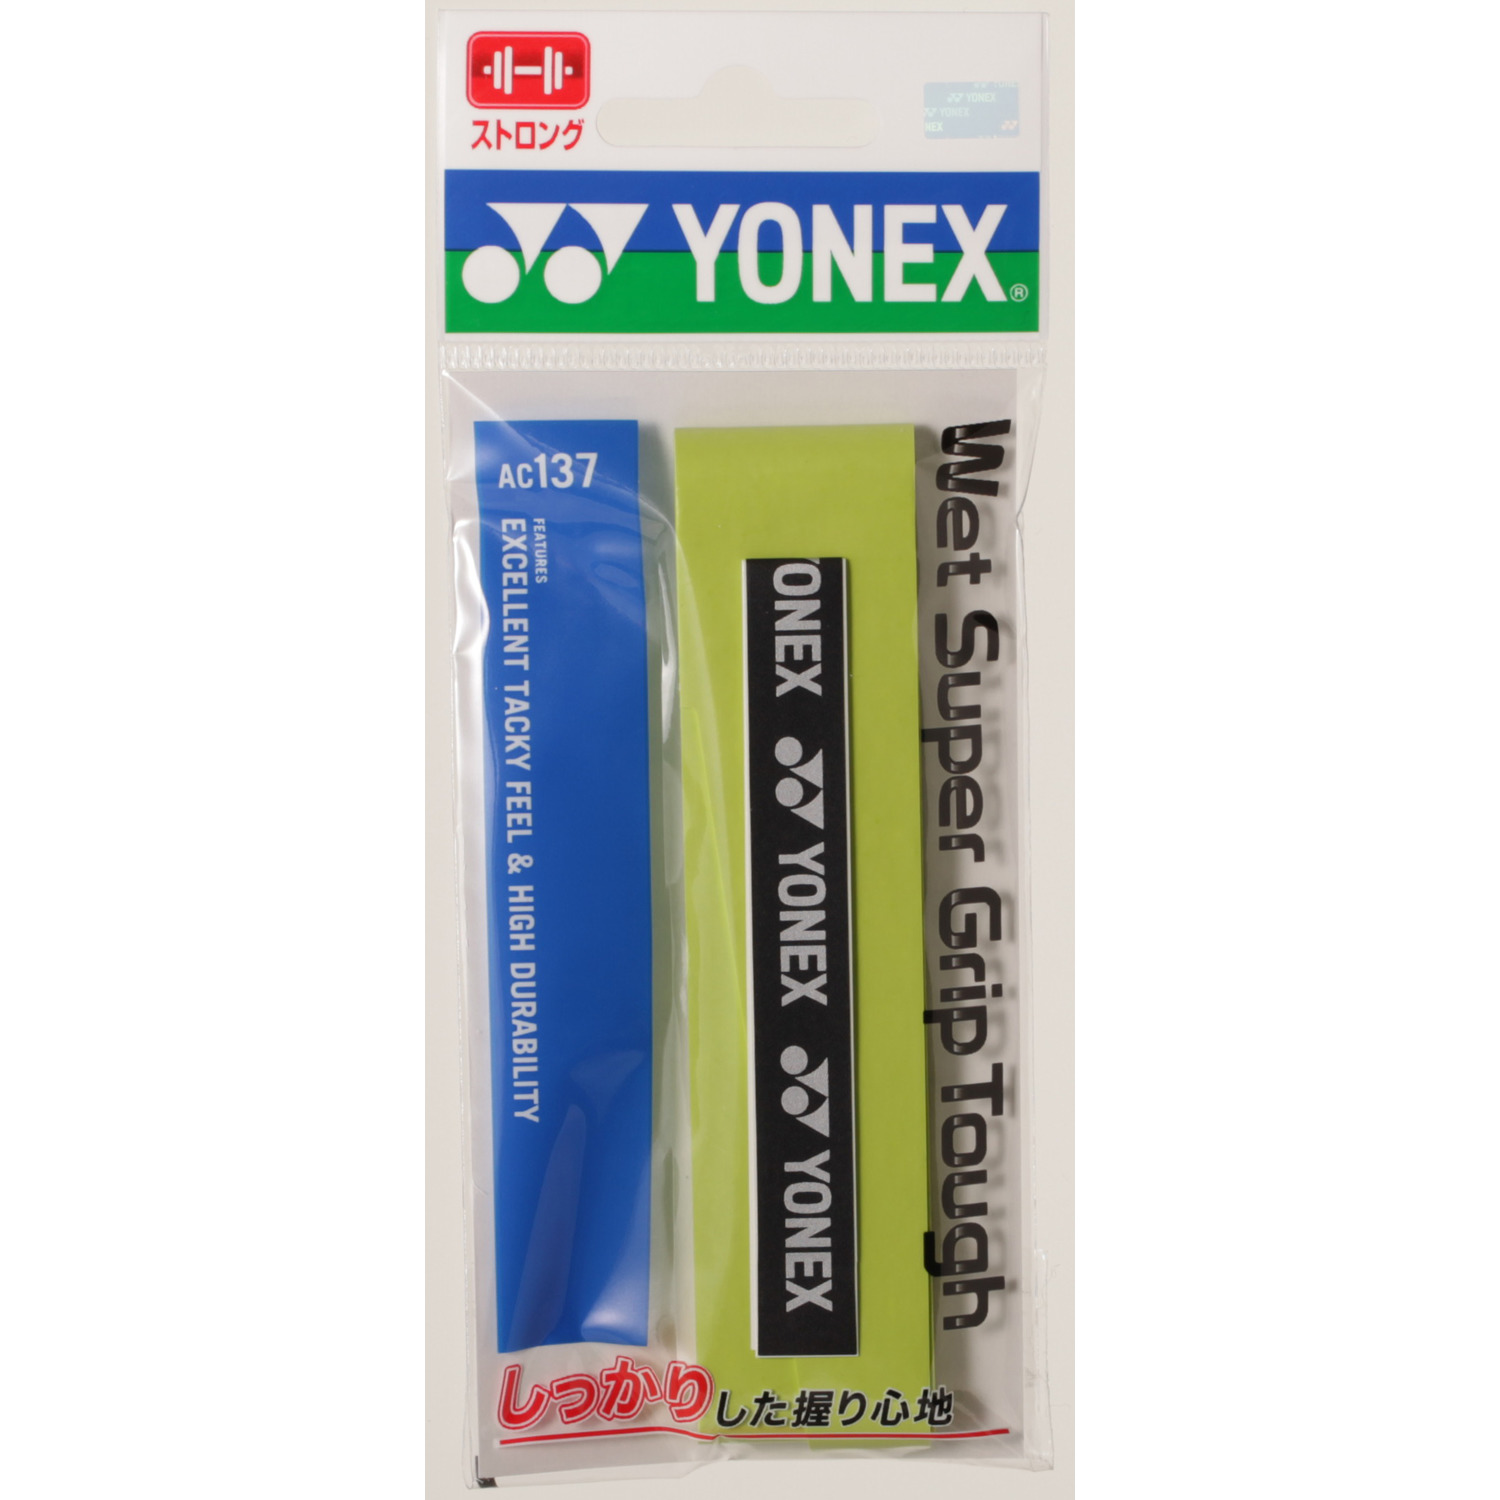 ヨネックス YONEX ac137-3 3本入り テニス バドミントン グリップテープ ウエットスーパーグリップタフ 全4色 【数量限定】